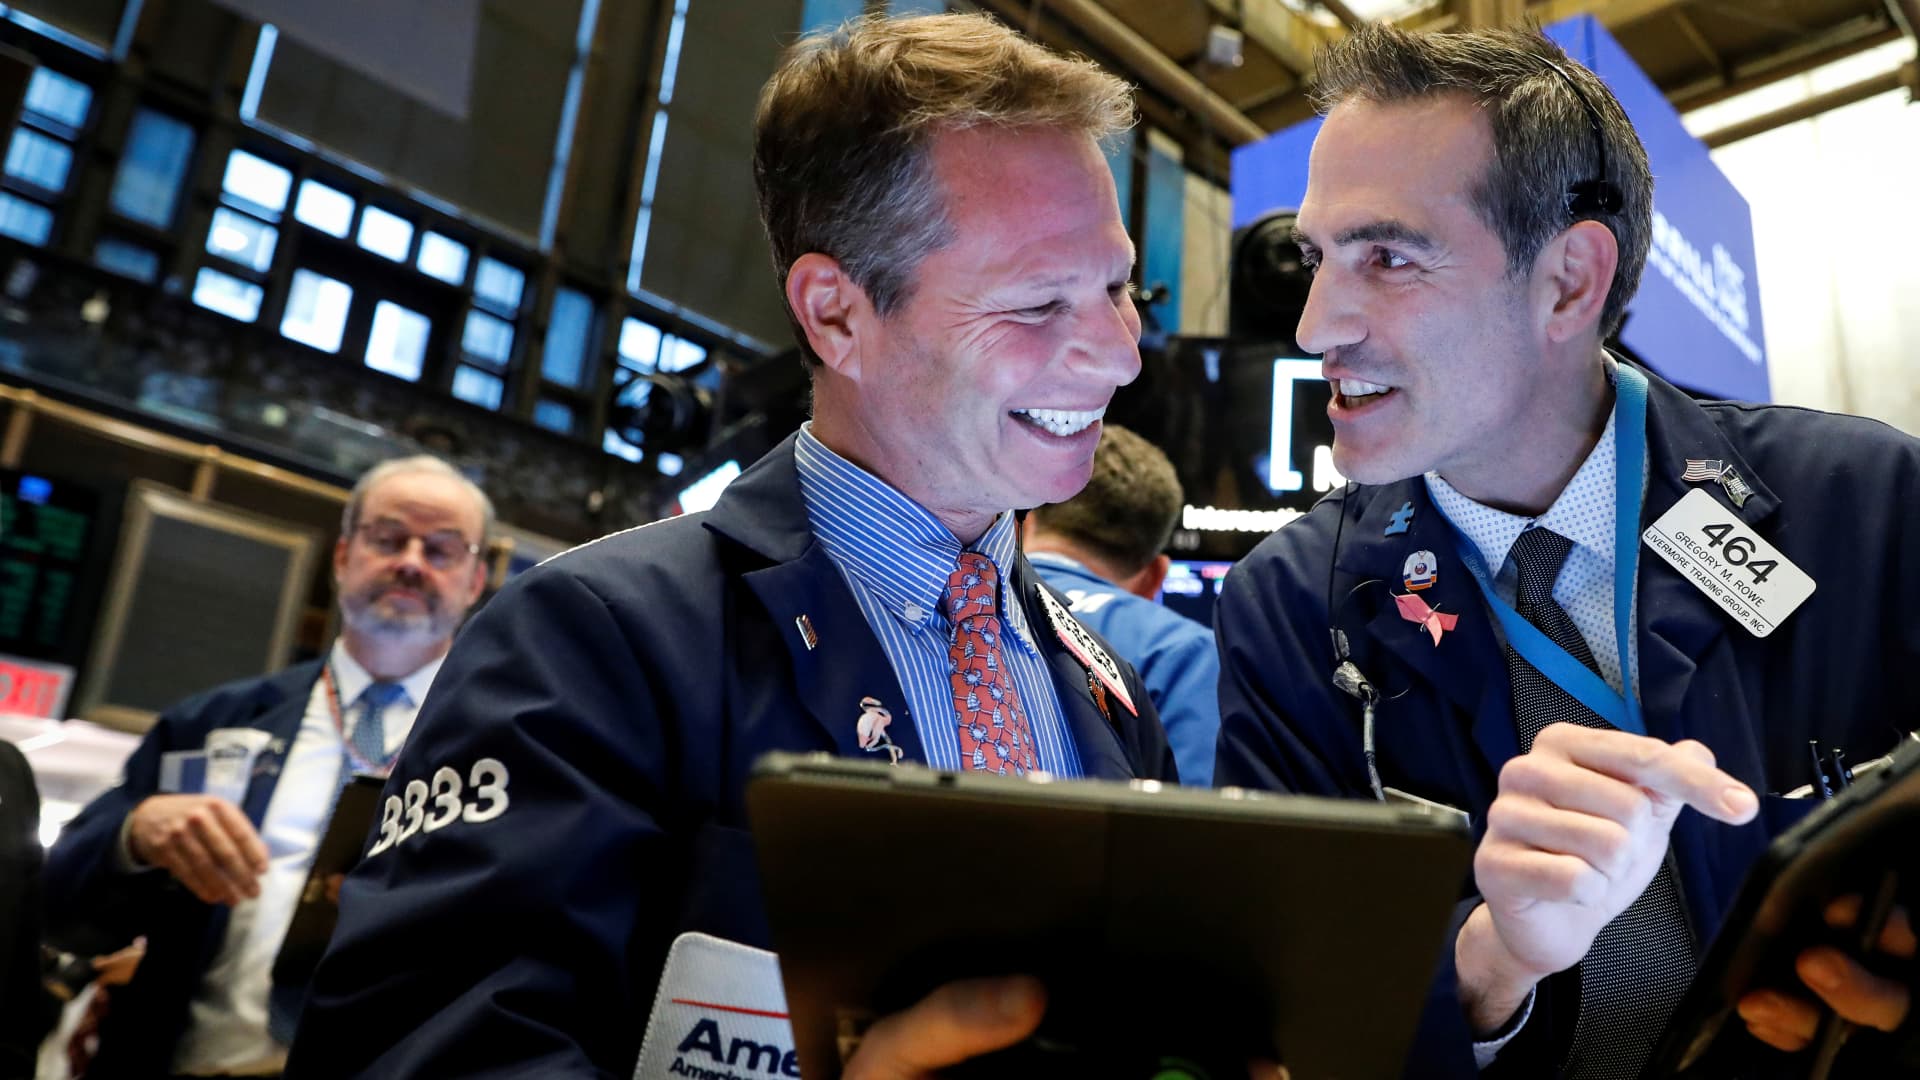 Dow sube 500 puntos después de una semana de montaña rusa para las acciones, la temporada de ganancias se pone en marcha